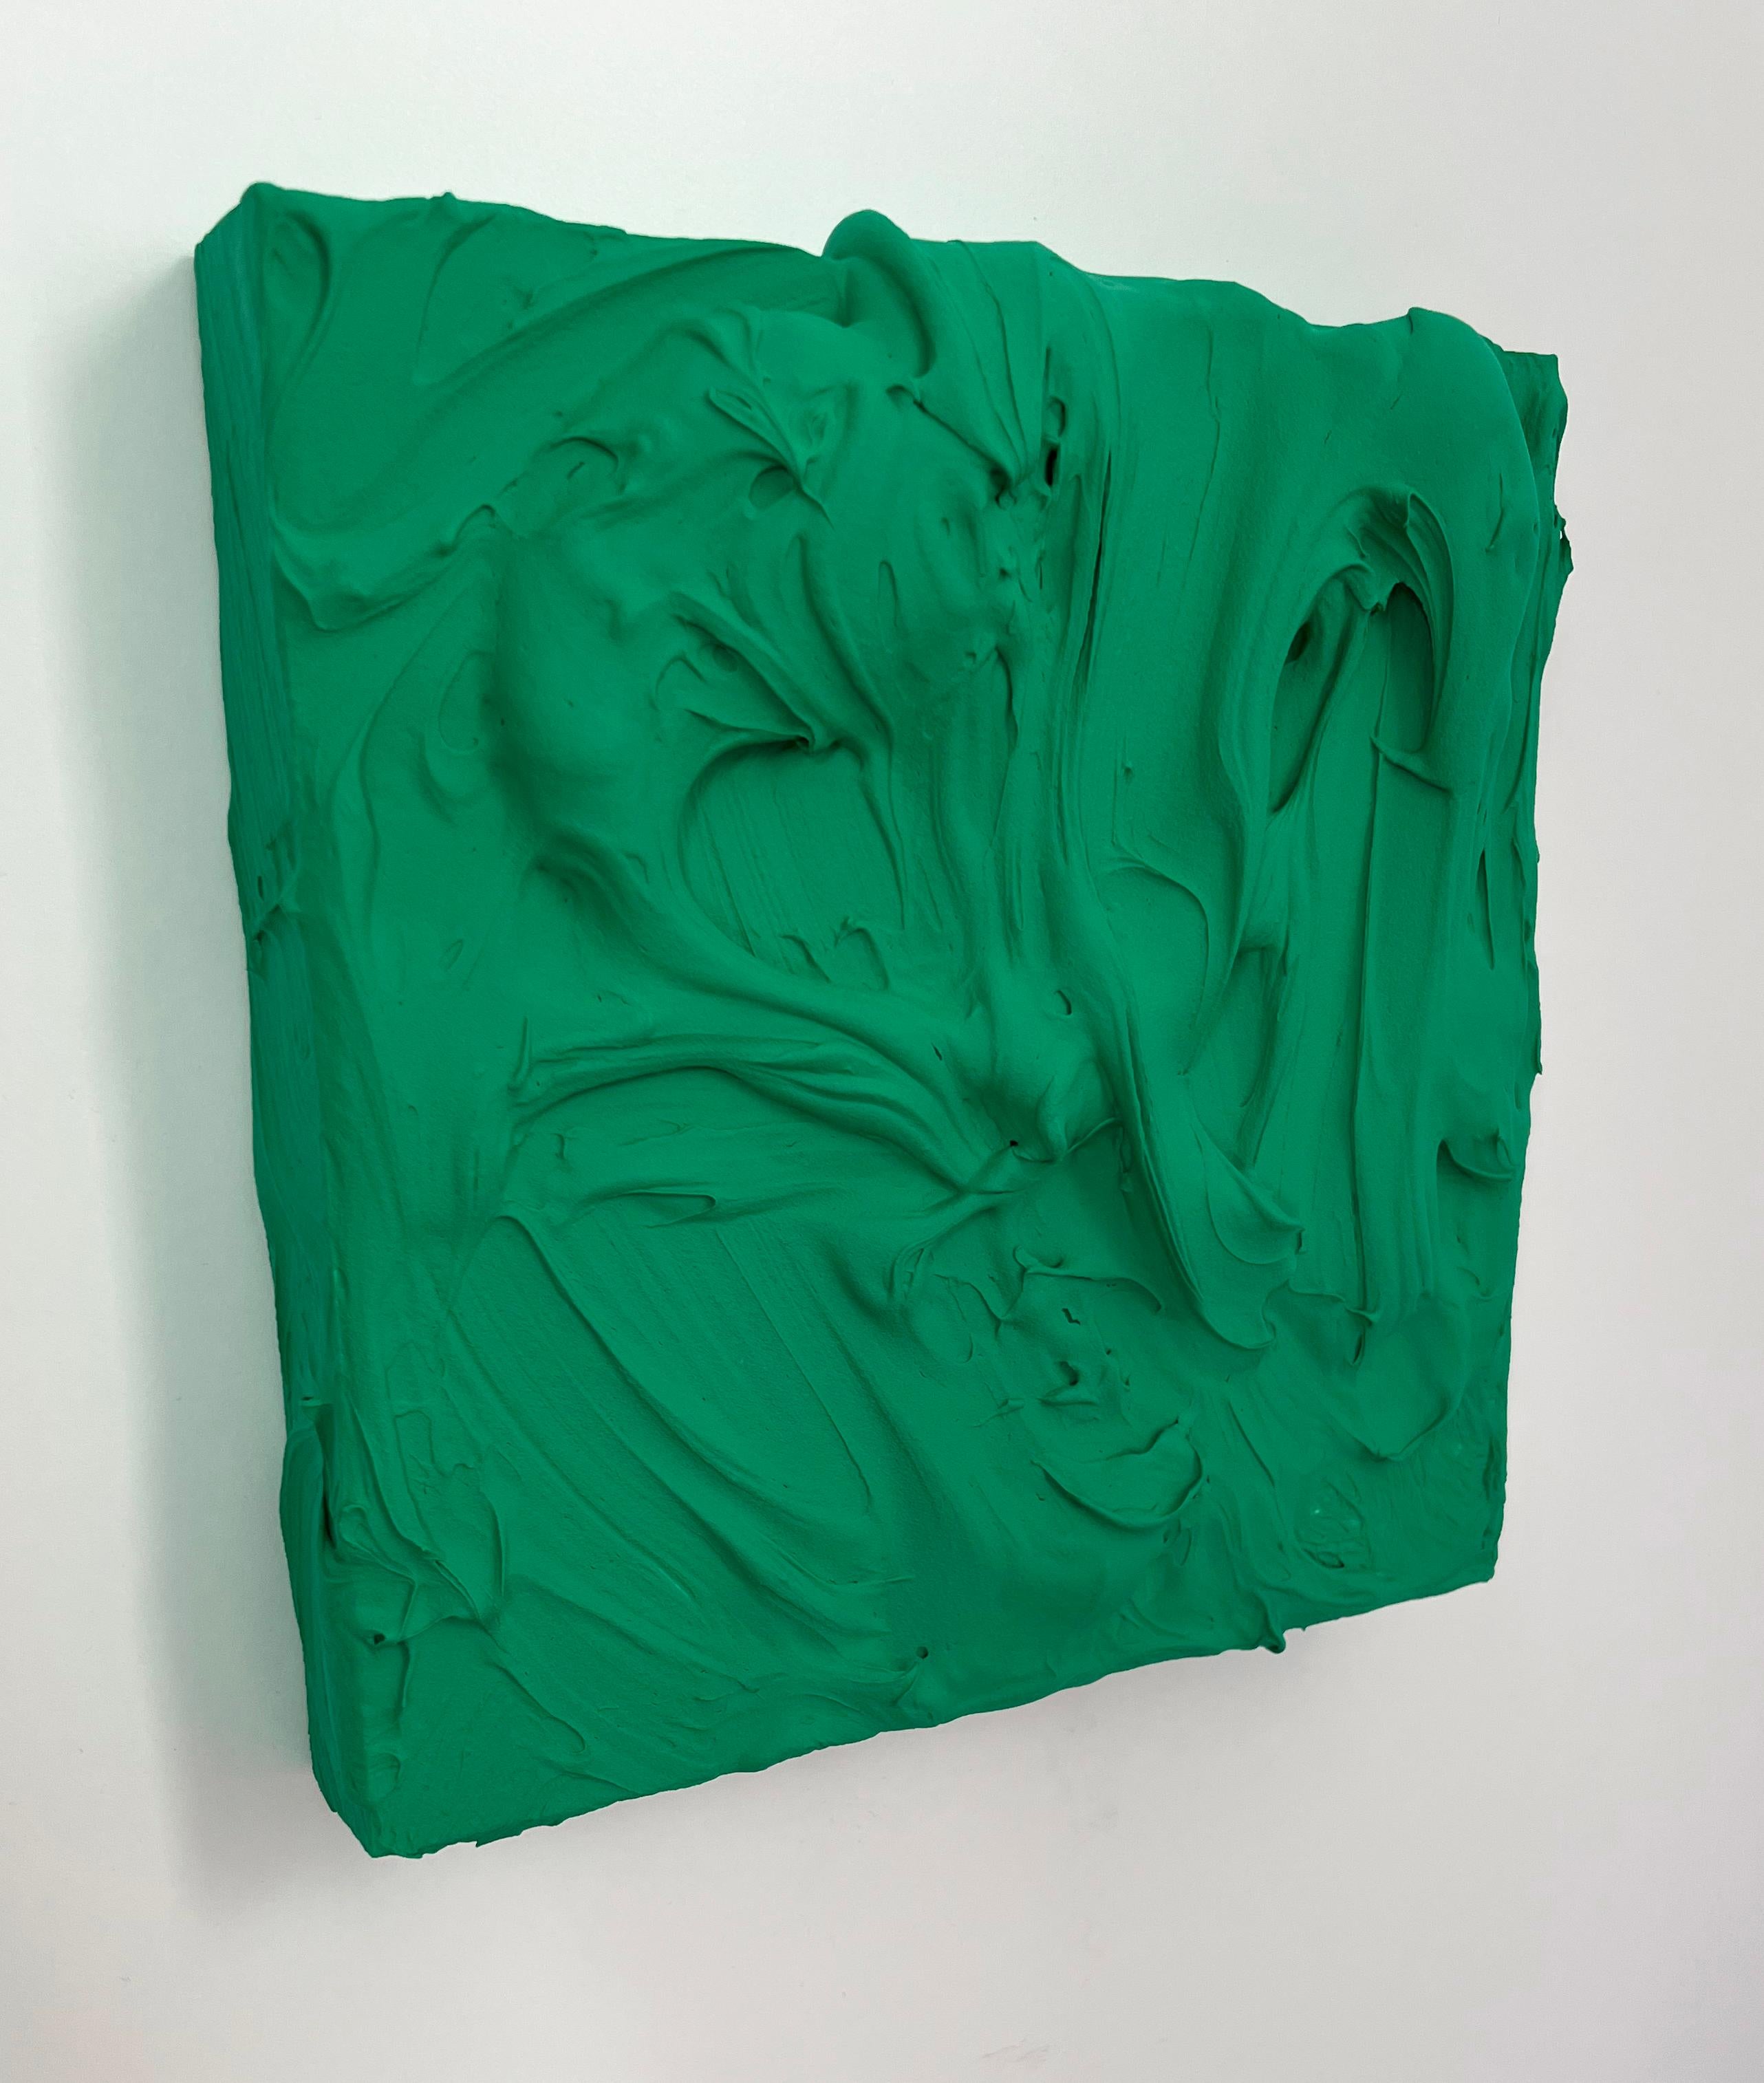 Smaragdgrüner Exzess (pastose, dicke Malerei, monochromes, quadratisches Pop-Art-Design) – Painting von Chloe Hedden